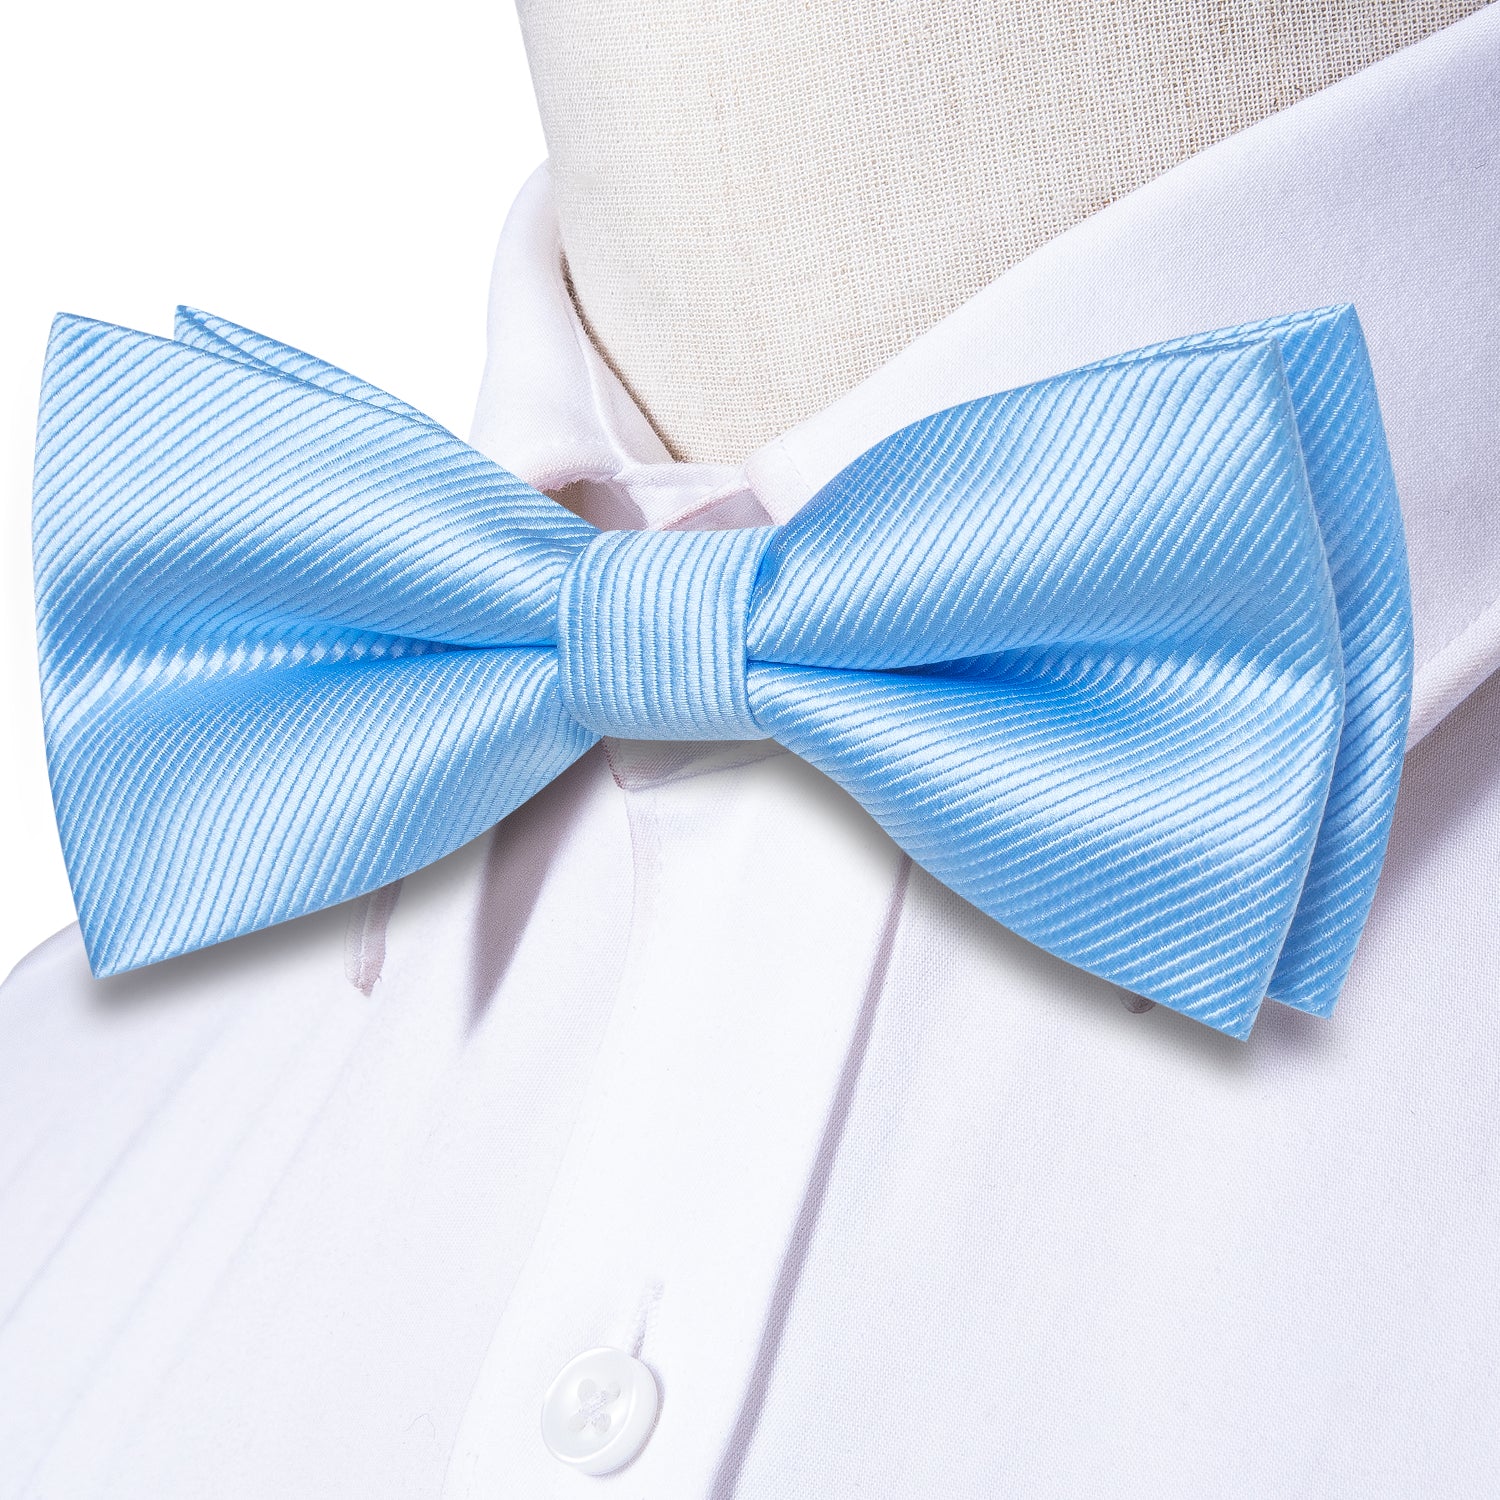 Light Blue Striped Pre-tied Bow Tie Hanky Cufflinks Set